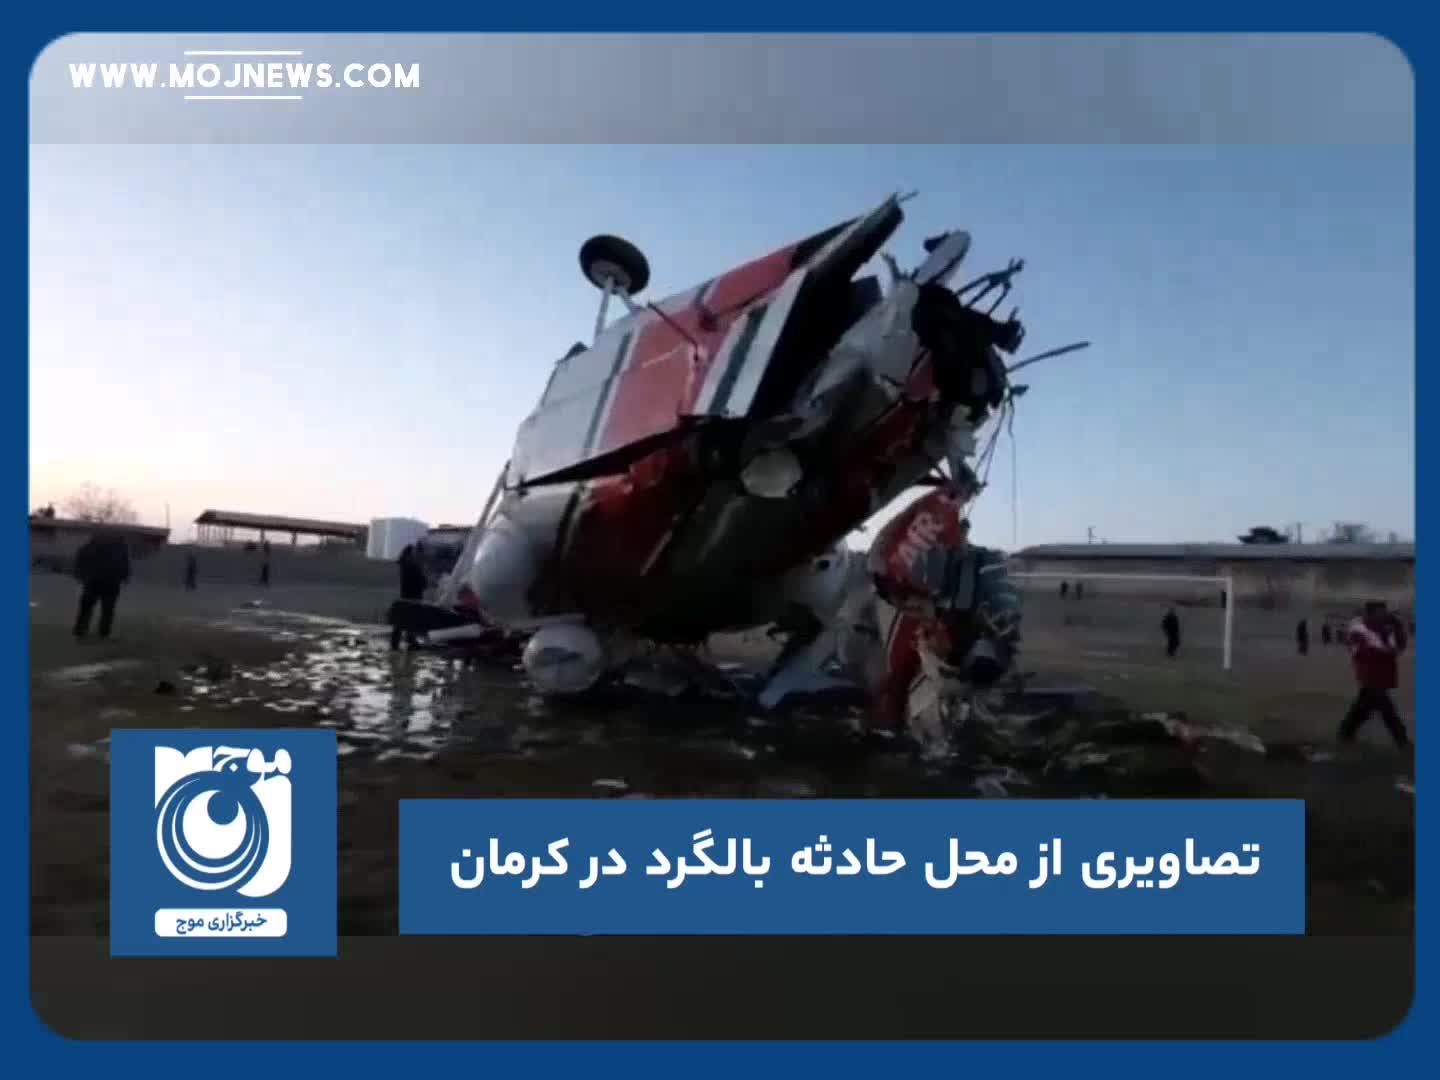 تصاویرى از محل حادثه بالگرد در کرمان